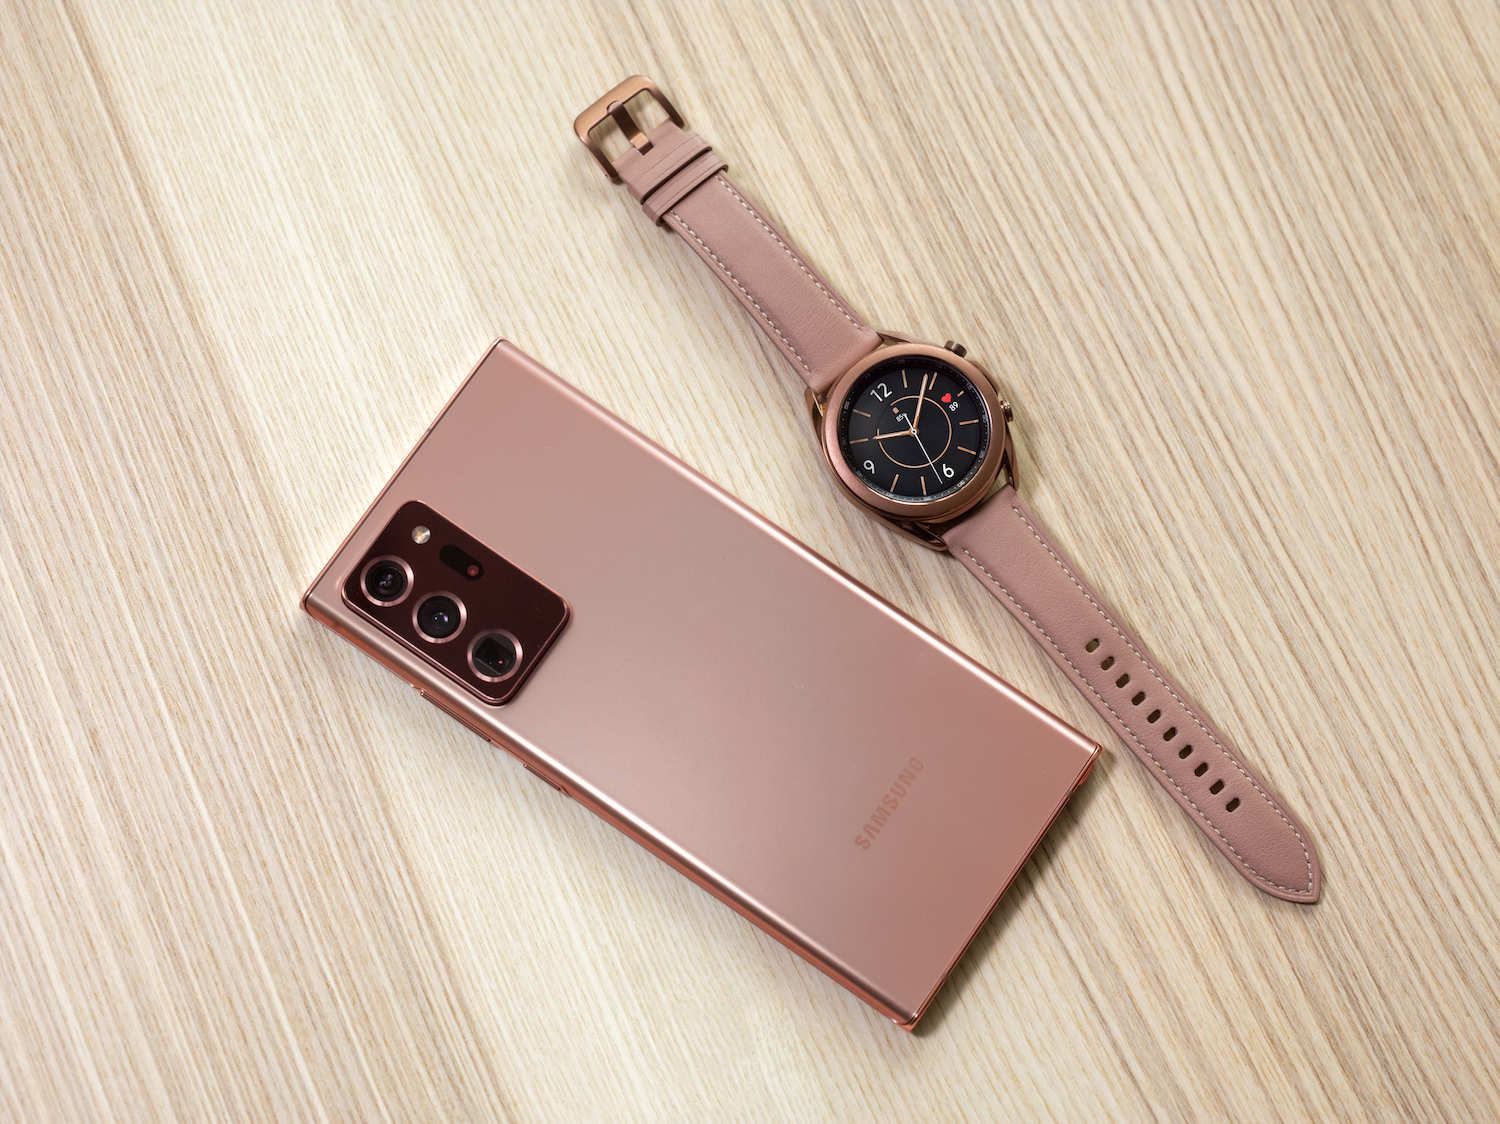 Samsung Galaxy Watch 3 mede pressão e traz novas métricas de corrida